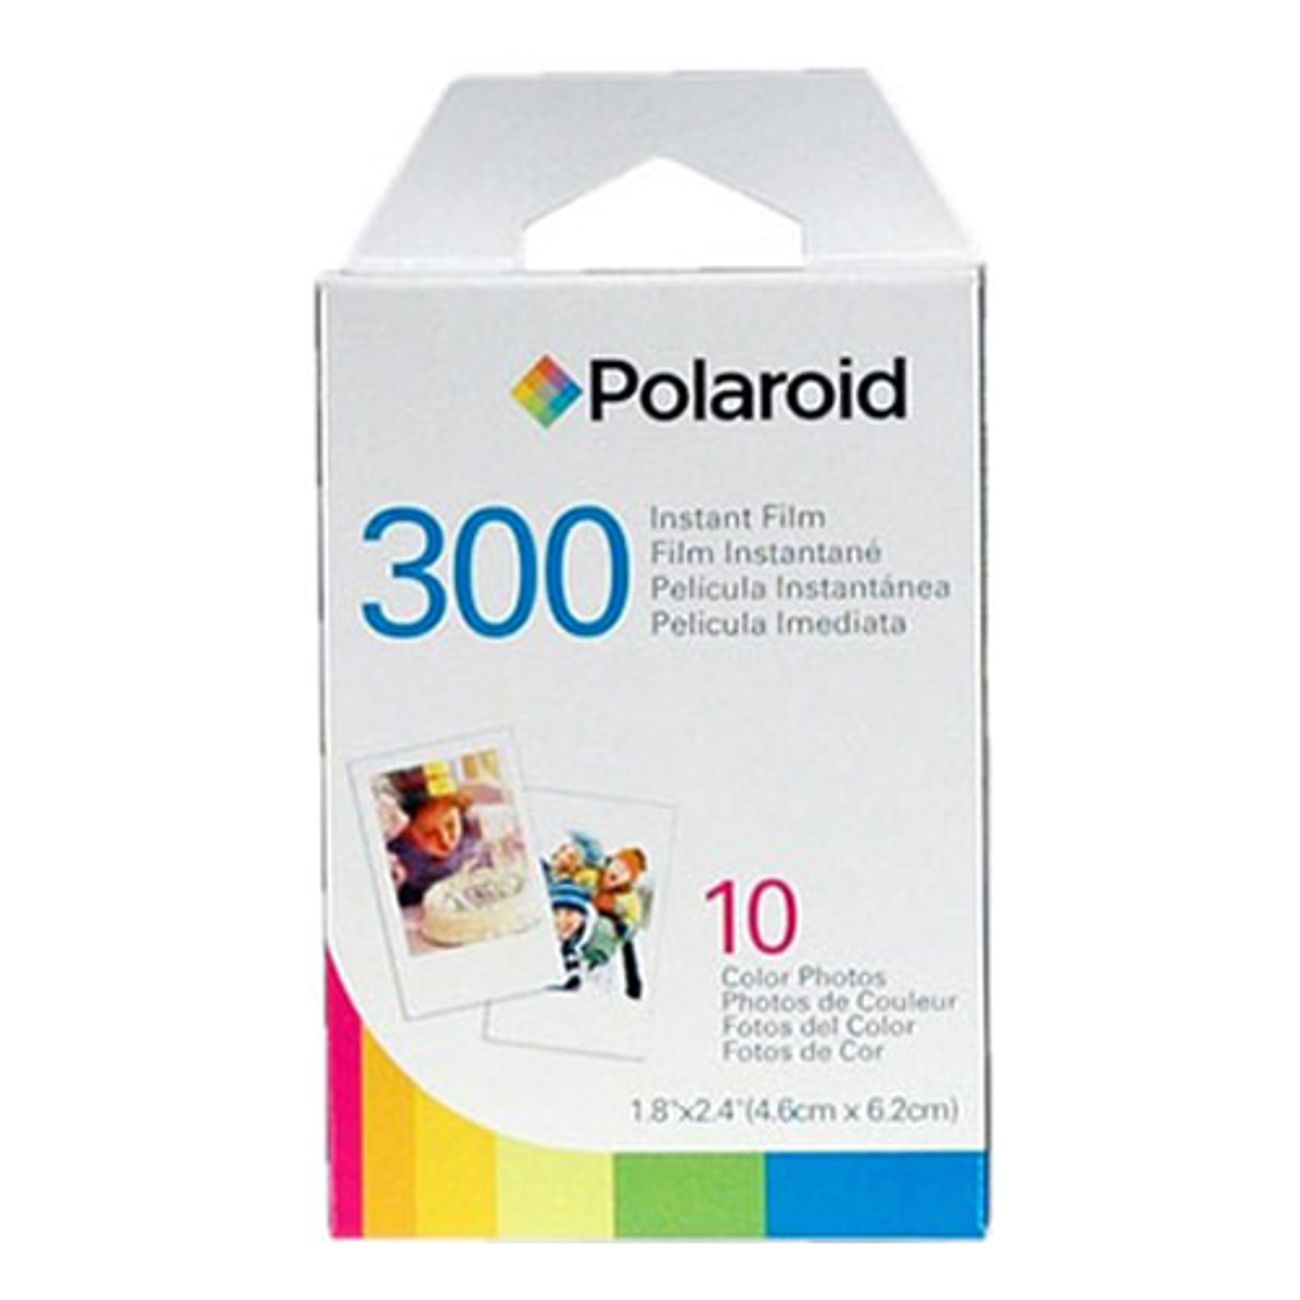 polaroid-300-3